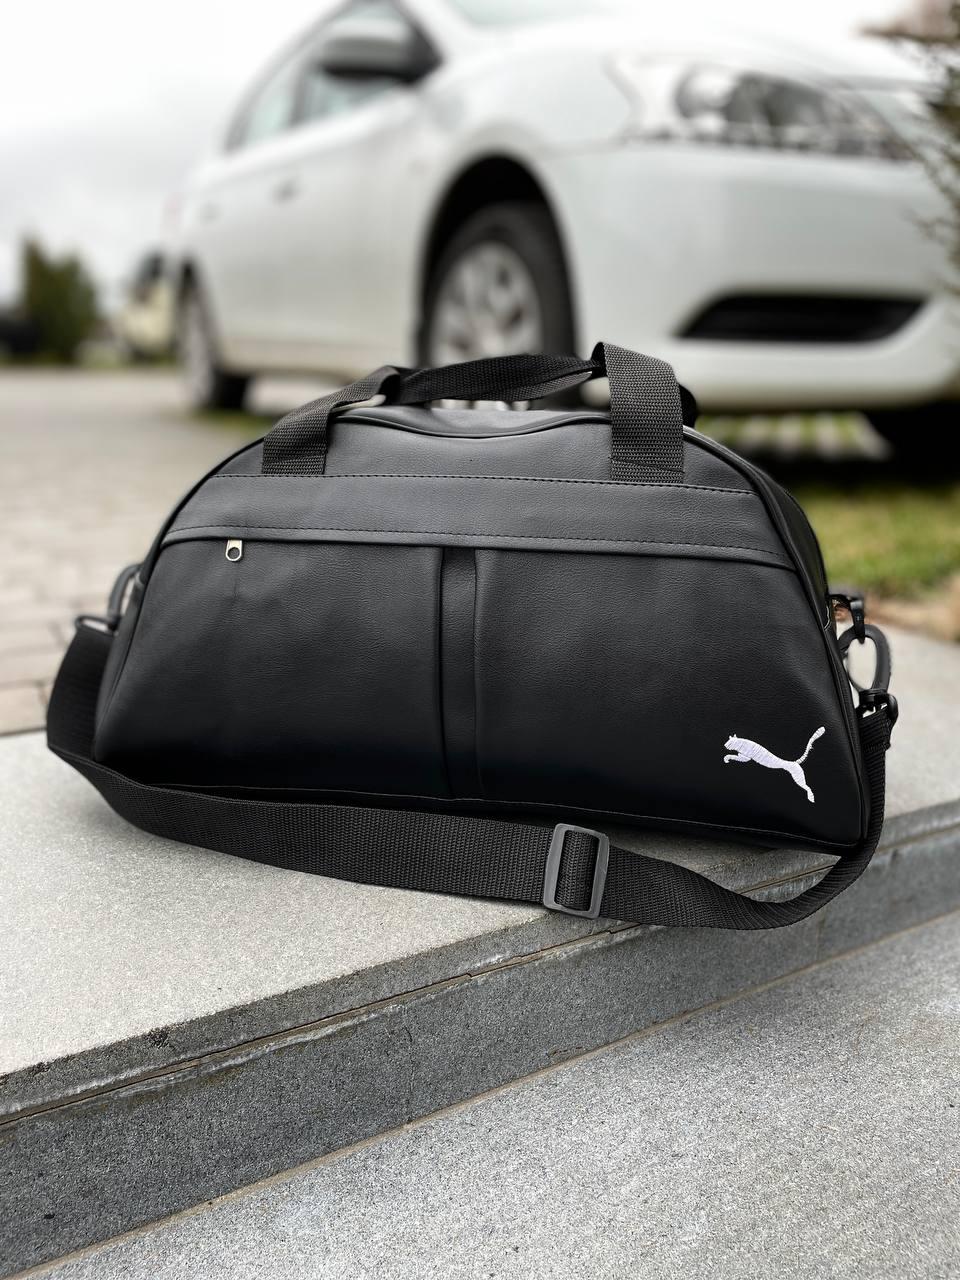 Спортивна сумка Puma чорна для тренувань шкіряна | Сумка груша Пума дорожня жіноча чоловіча